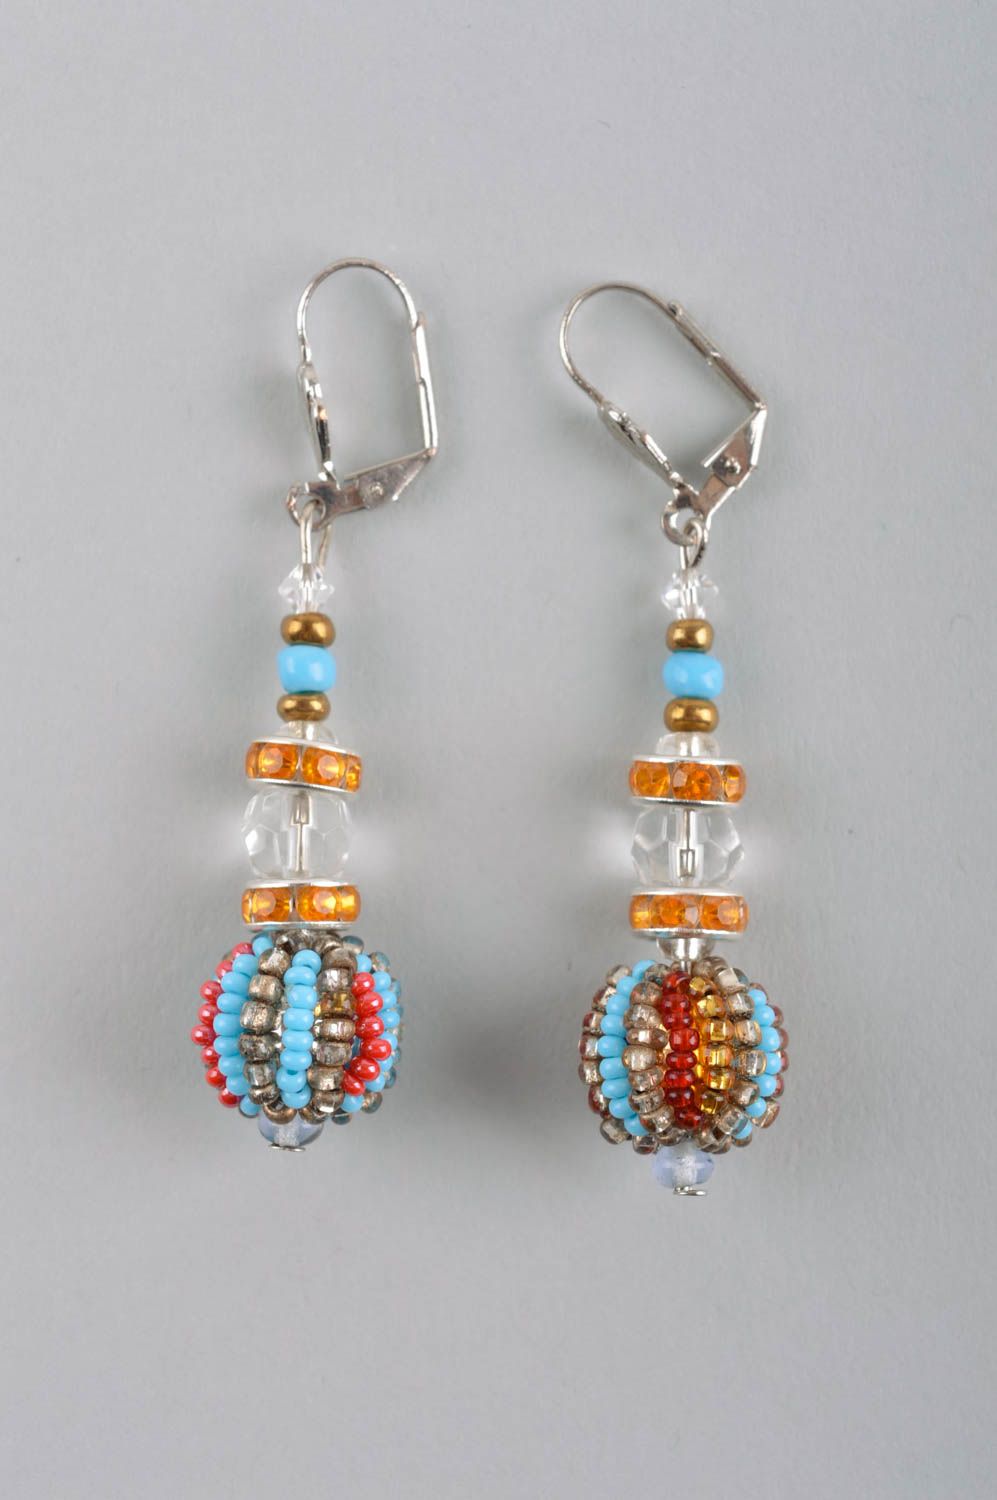 Handmade earrings ladies earrings handmade jewelry earrings for women gift ideas photo 3